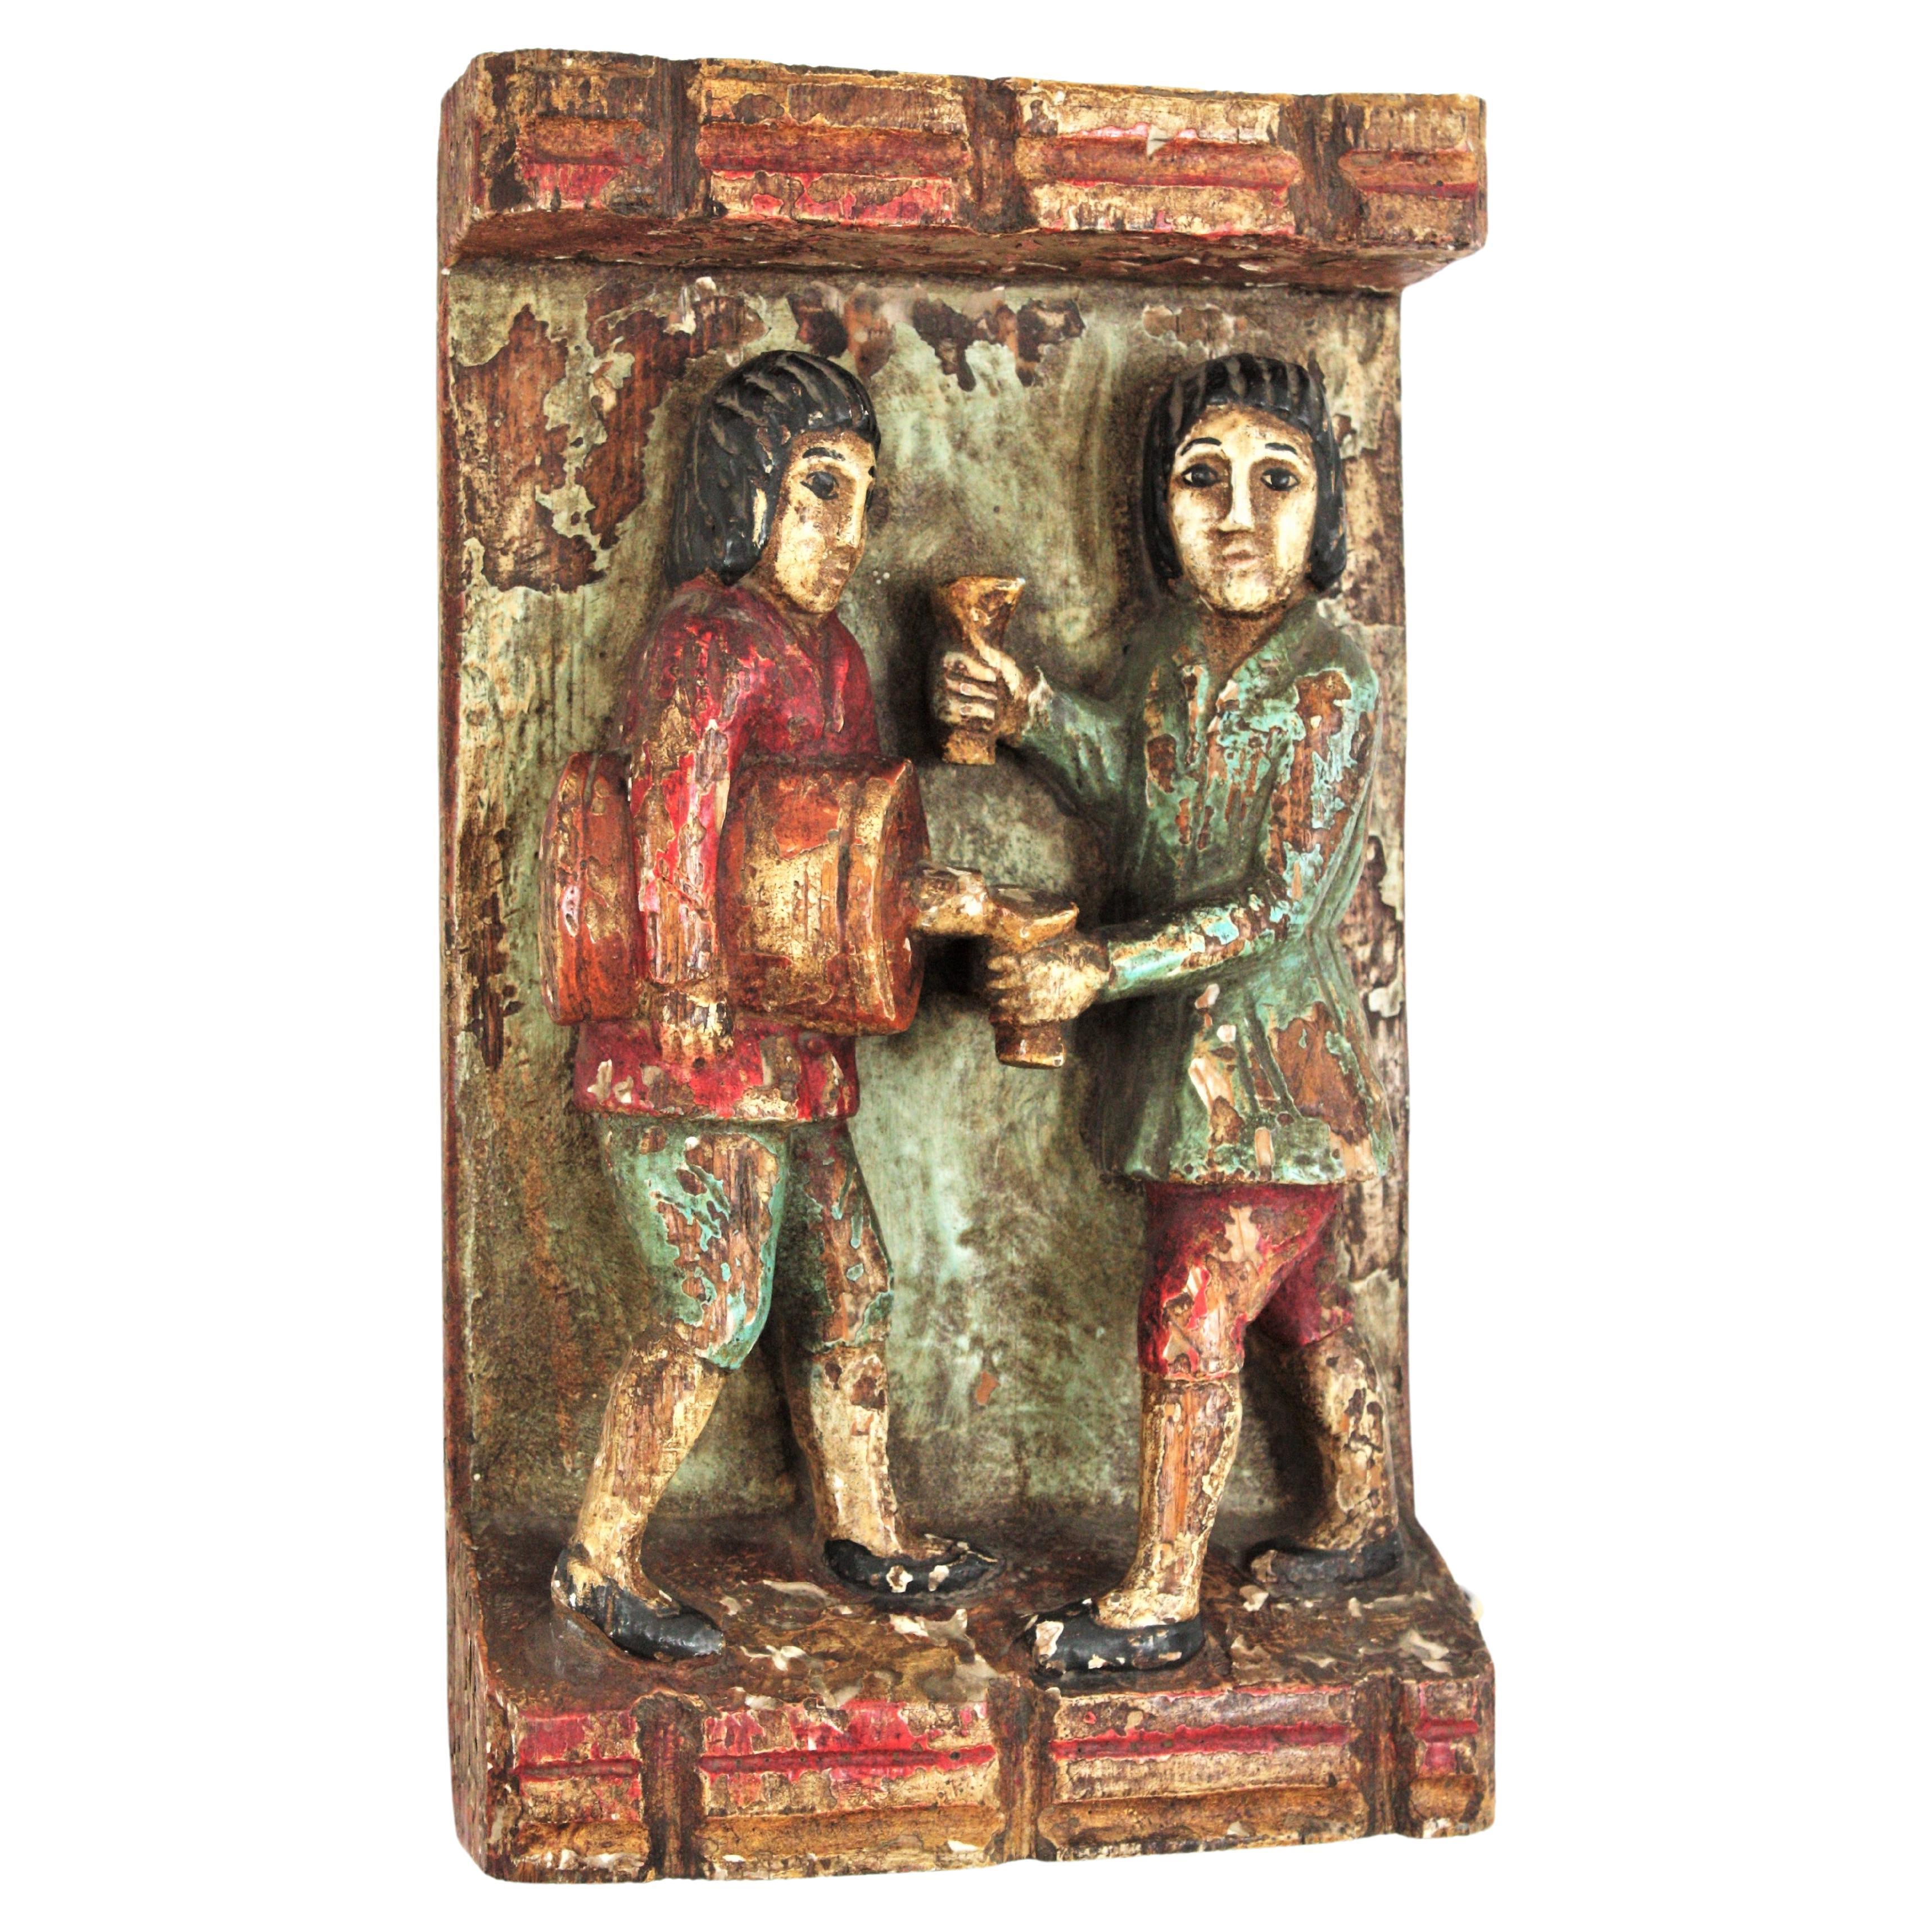 Décoration murale en bas-relief d'inspiration médiévale moderne du milieu du siècle en bois sculpté polychrome. Espagne, années 1950.
Magnifique bas-relief sculpté à la main représentant une scène de genre. Deux personnages debout, l'un servant du